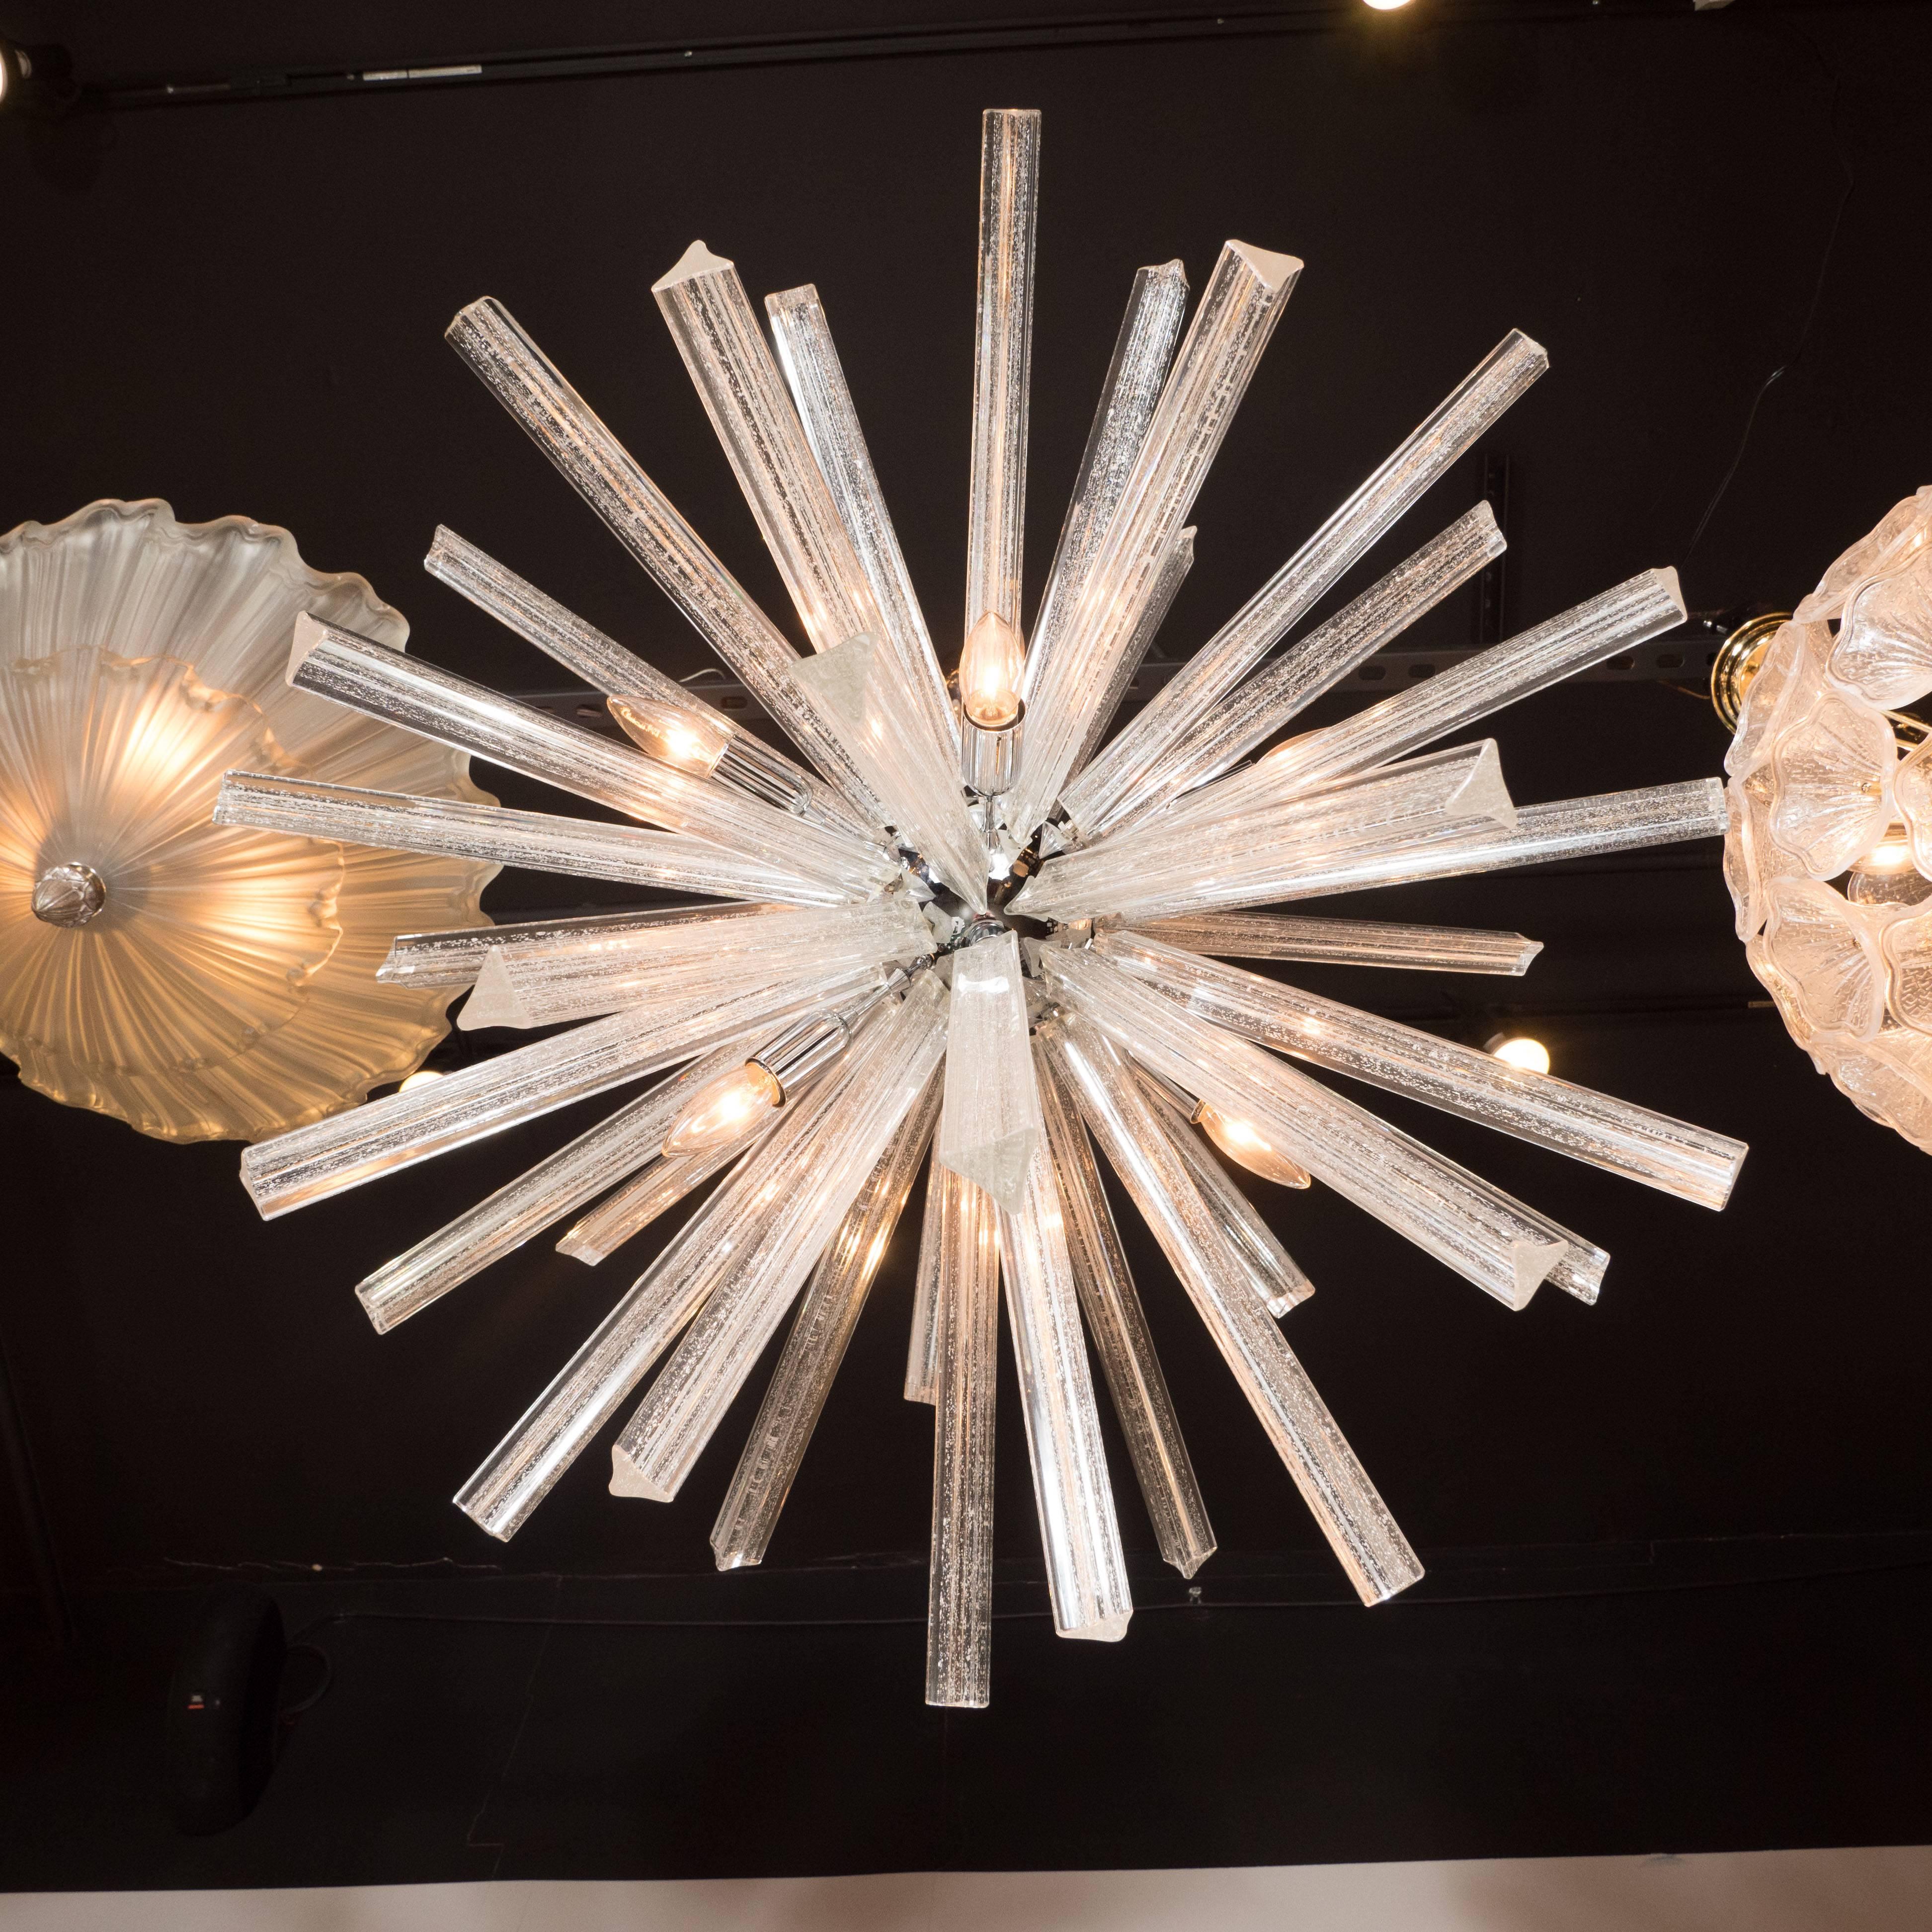 Dieser exquisite Sputnik-Kronleuchter aus mundgeblasenem Muranoglas bietet eine Fülle von Triedre-Kristallen - jedes mit einer Fülle von 24-Karat-Weißgold-Flecken -, die von einer zentralen Kugel aus glänzendem Chrom ausgehen. Der Baldachin und die